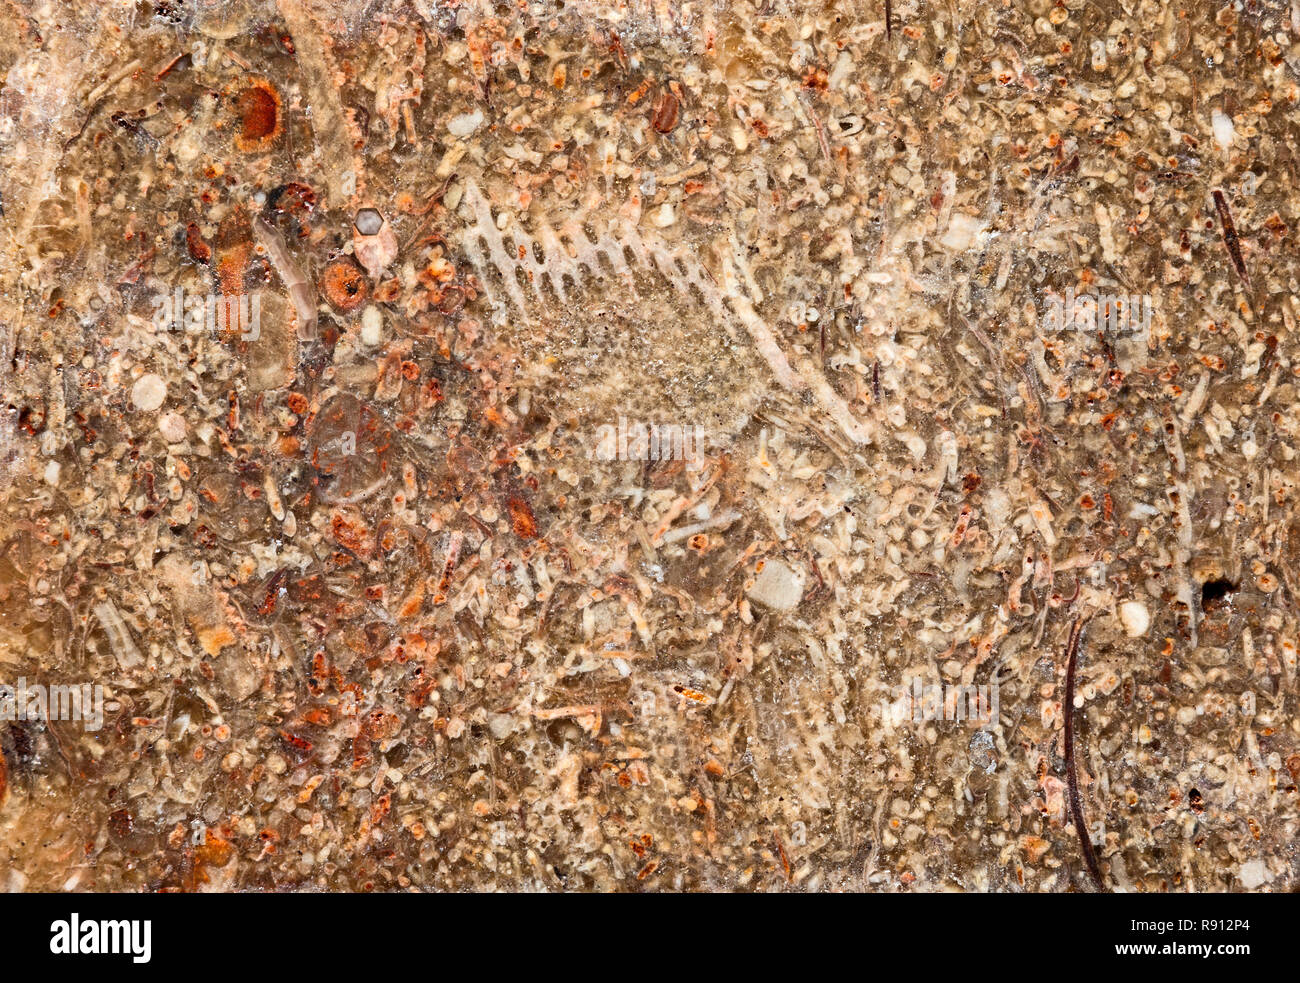 Sezione di fossili, calcare.i fossili in queste rocce possono essere di macroscopiche o microscopiche dimensioni. Foto Stock